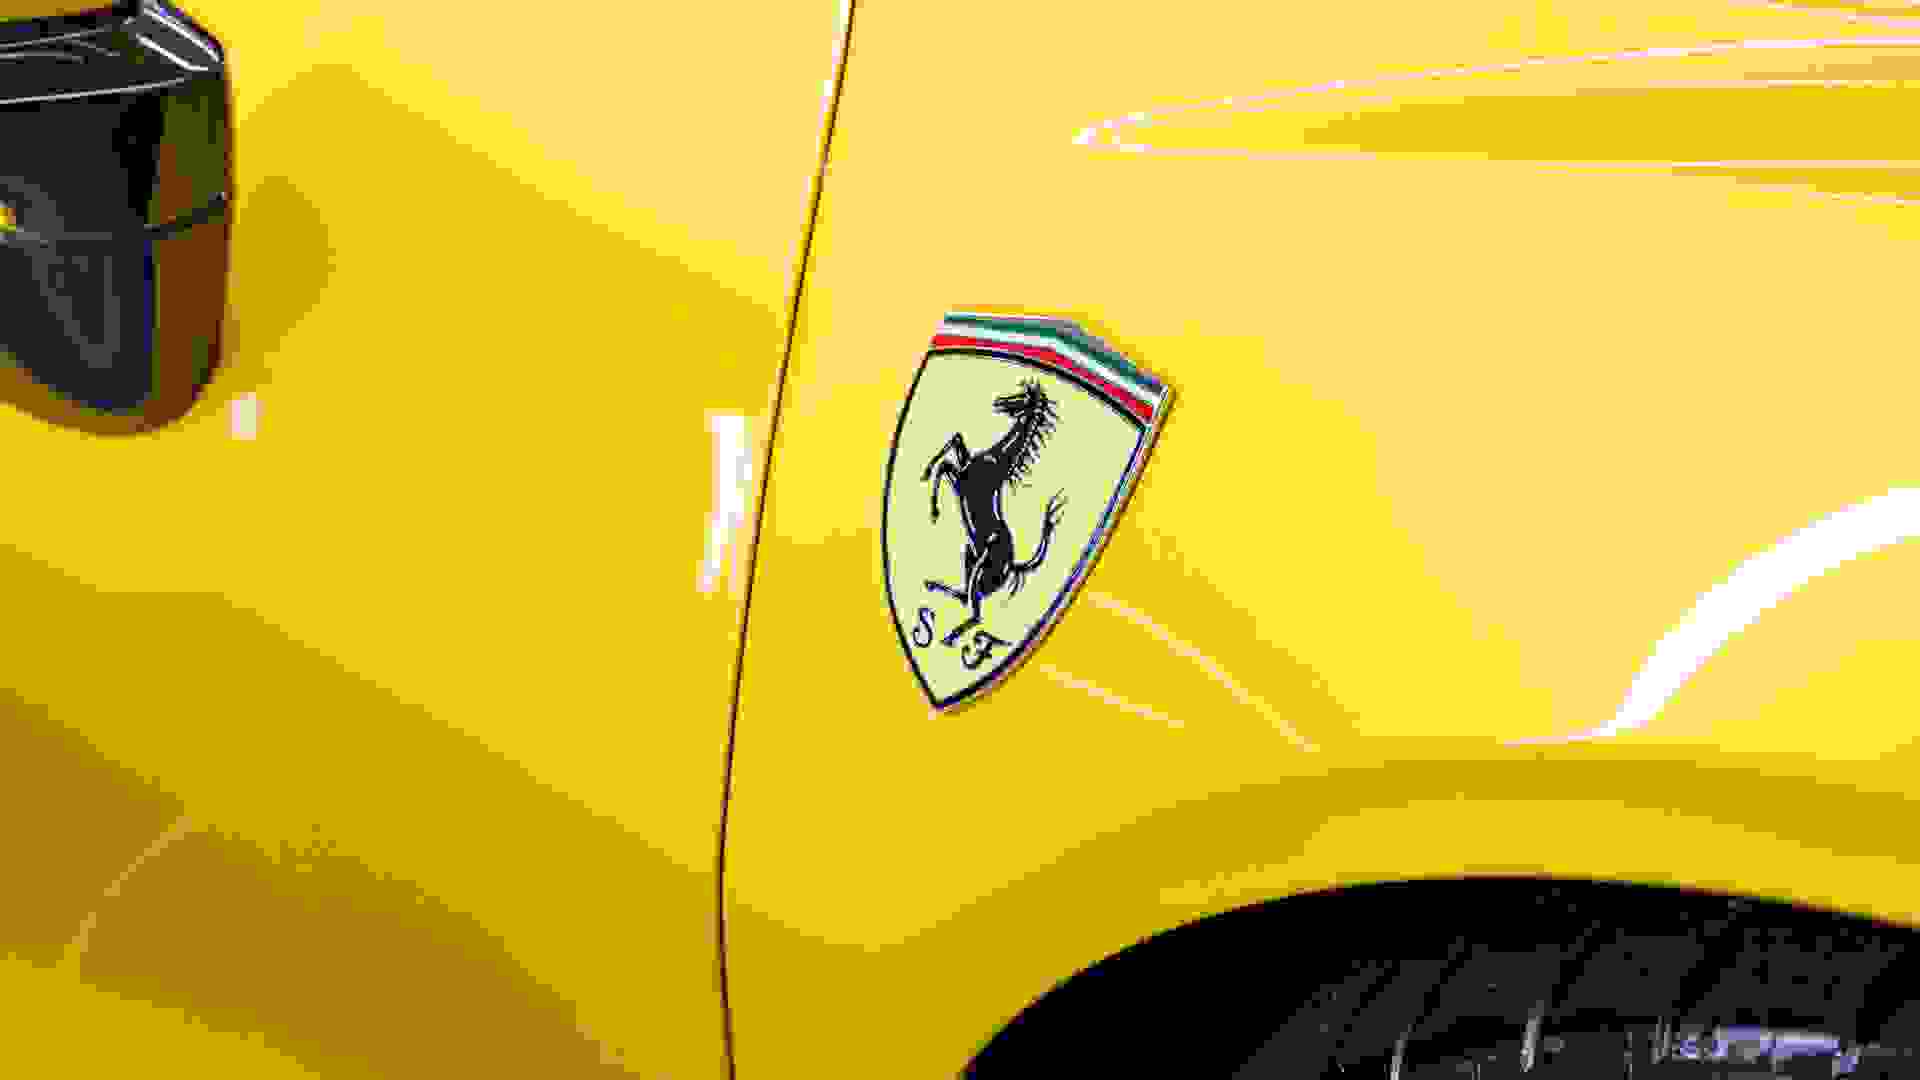 Ferrari SF90 Stradale Photo 7f9dea18-2869-429a-b720-cd93bc063b5f.jpg